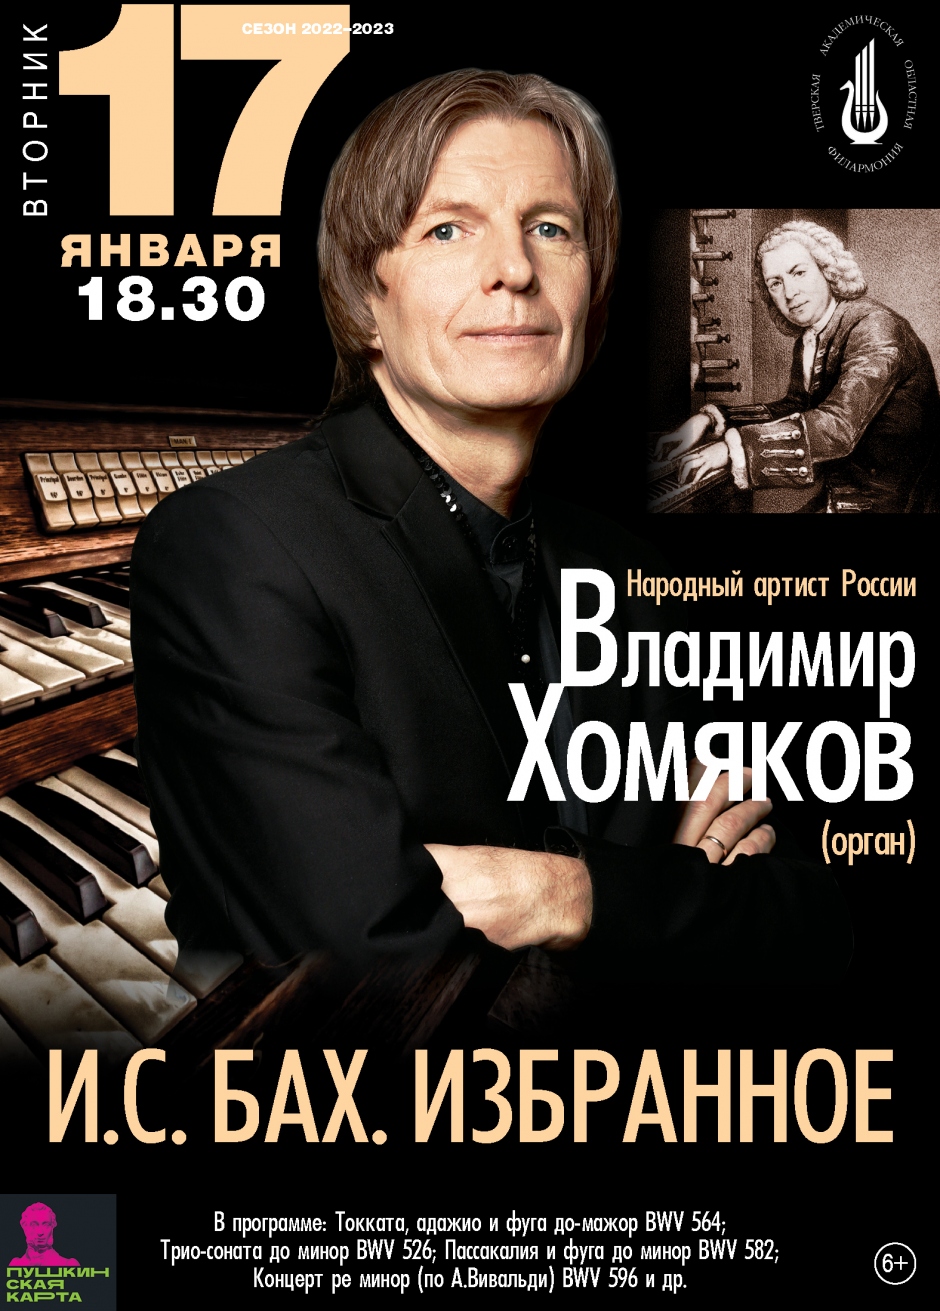 В Тверской филармонии состоится органный концерт Владимира Хомякова